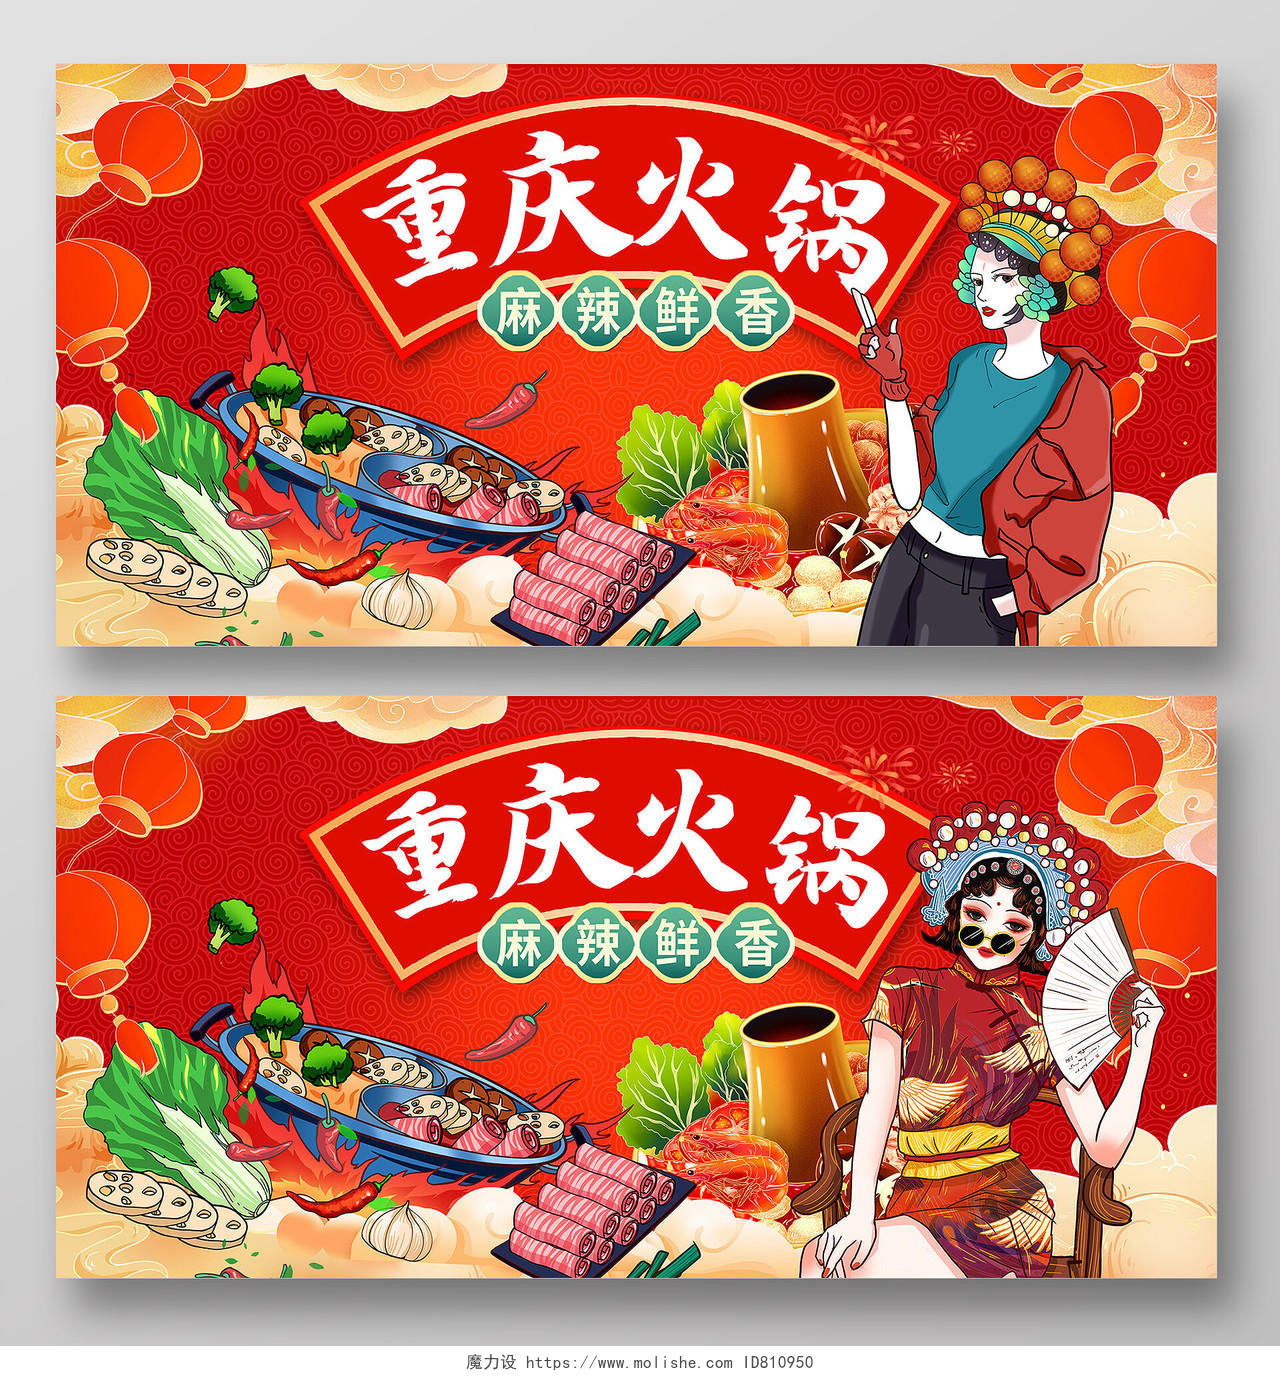 红色国潮重庆火锅火锅展板设计